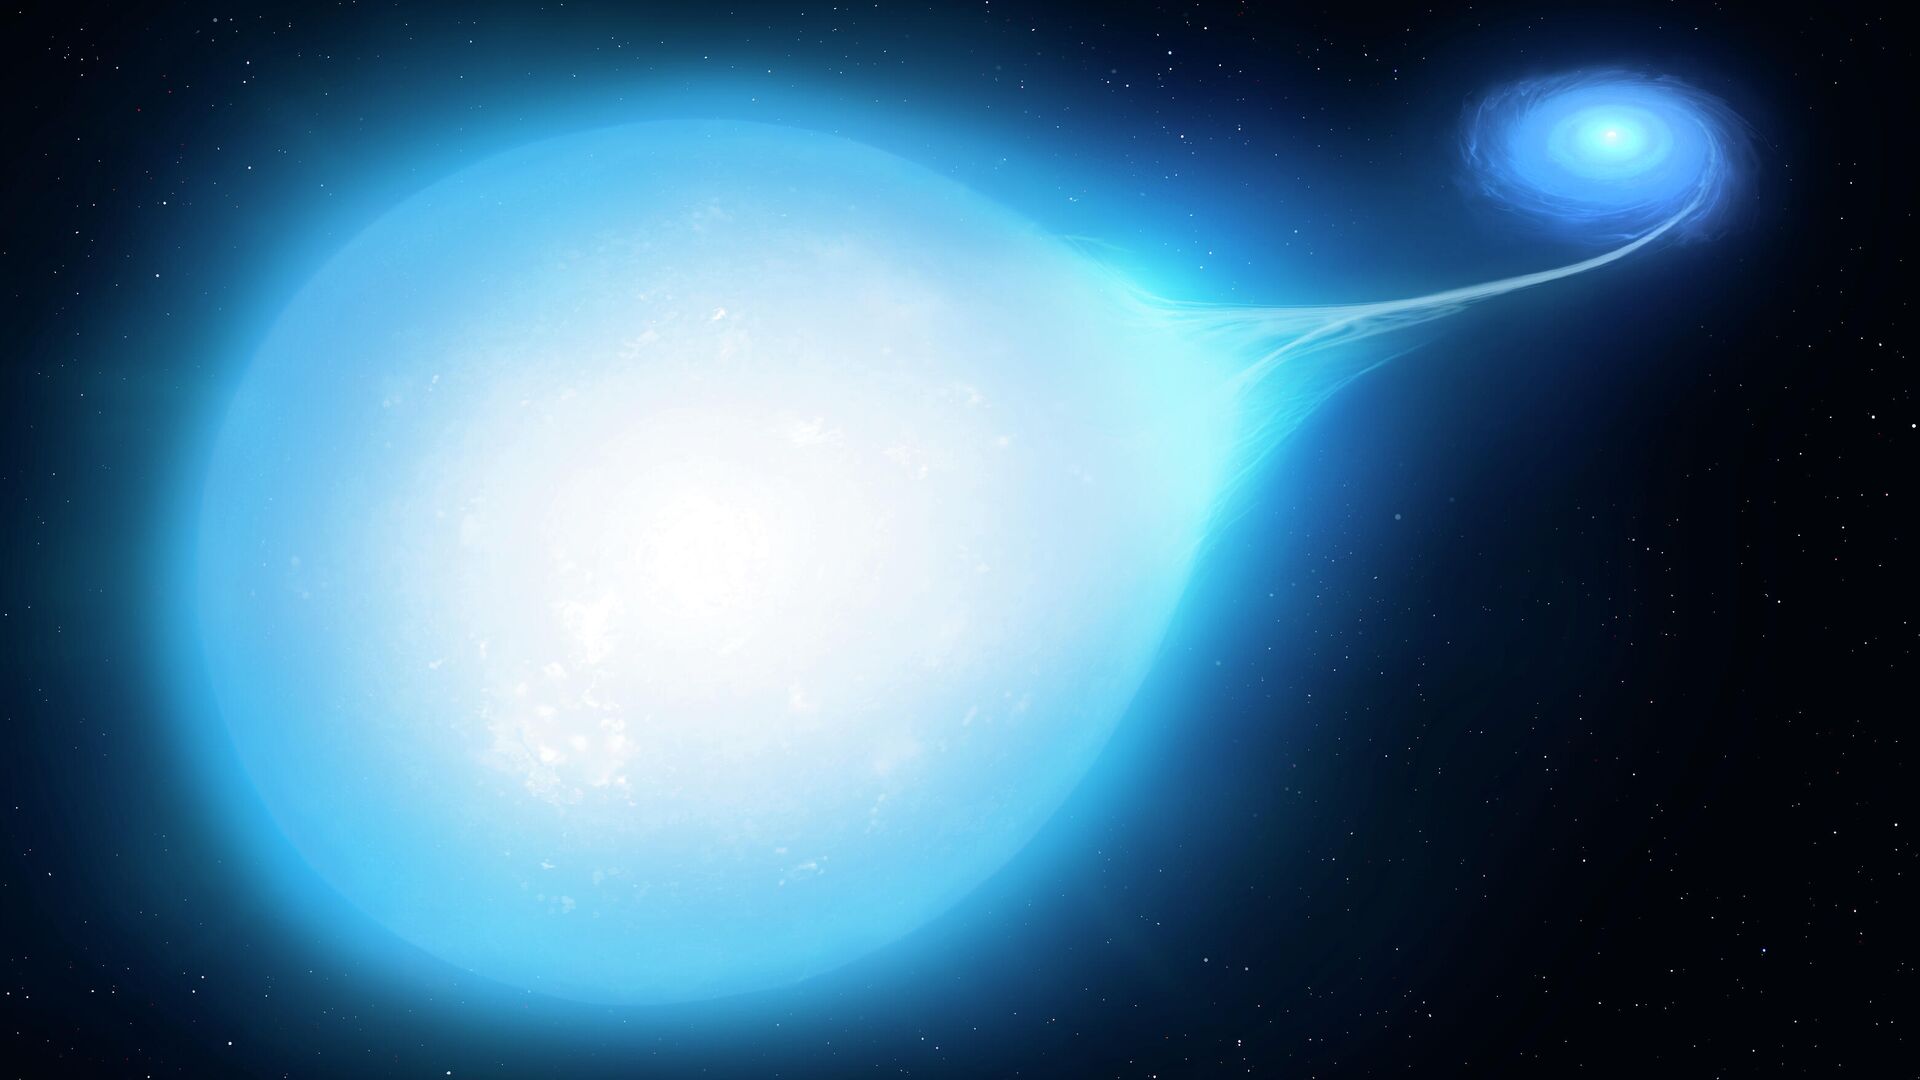 Художественное представление звездной системы HD265435. На переднем плане - каплевидная звезда-субкарлик, вещество которой падает на белый карлик - РИА Новости, 1920, 12.07.2021